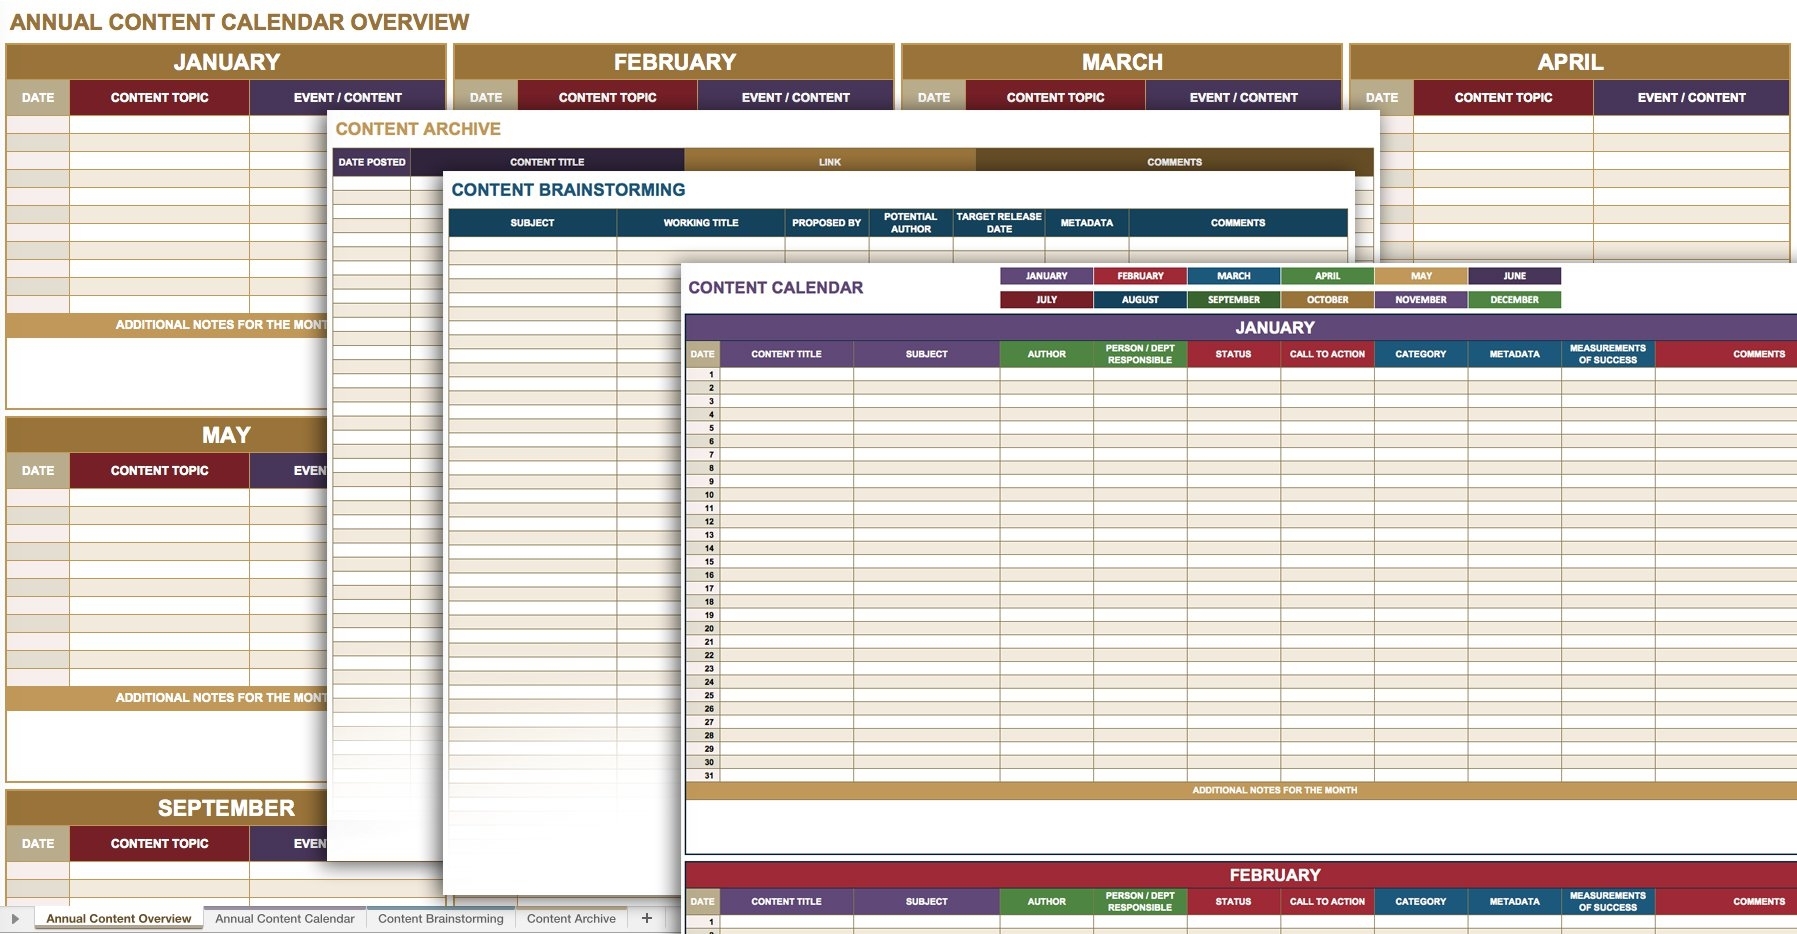 12 Free Social Media Templates | Smartsheet intended for Social Media Posting Calendar Template Free Printable Excel